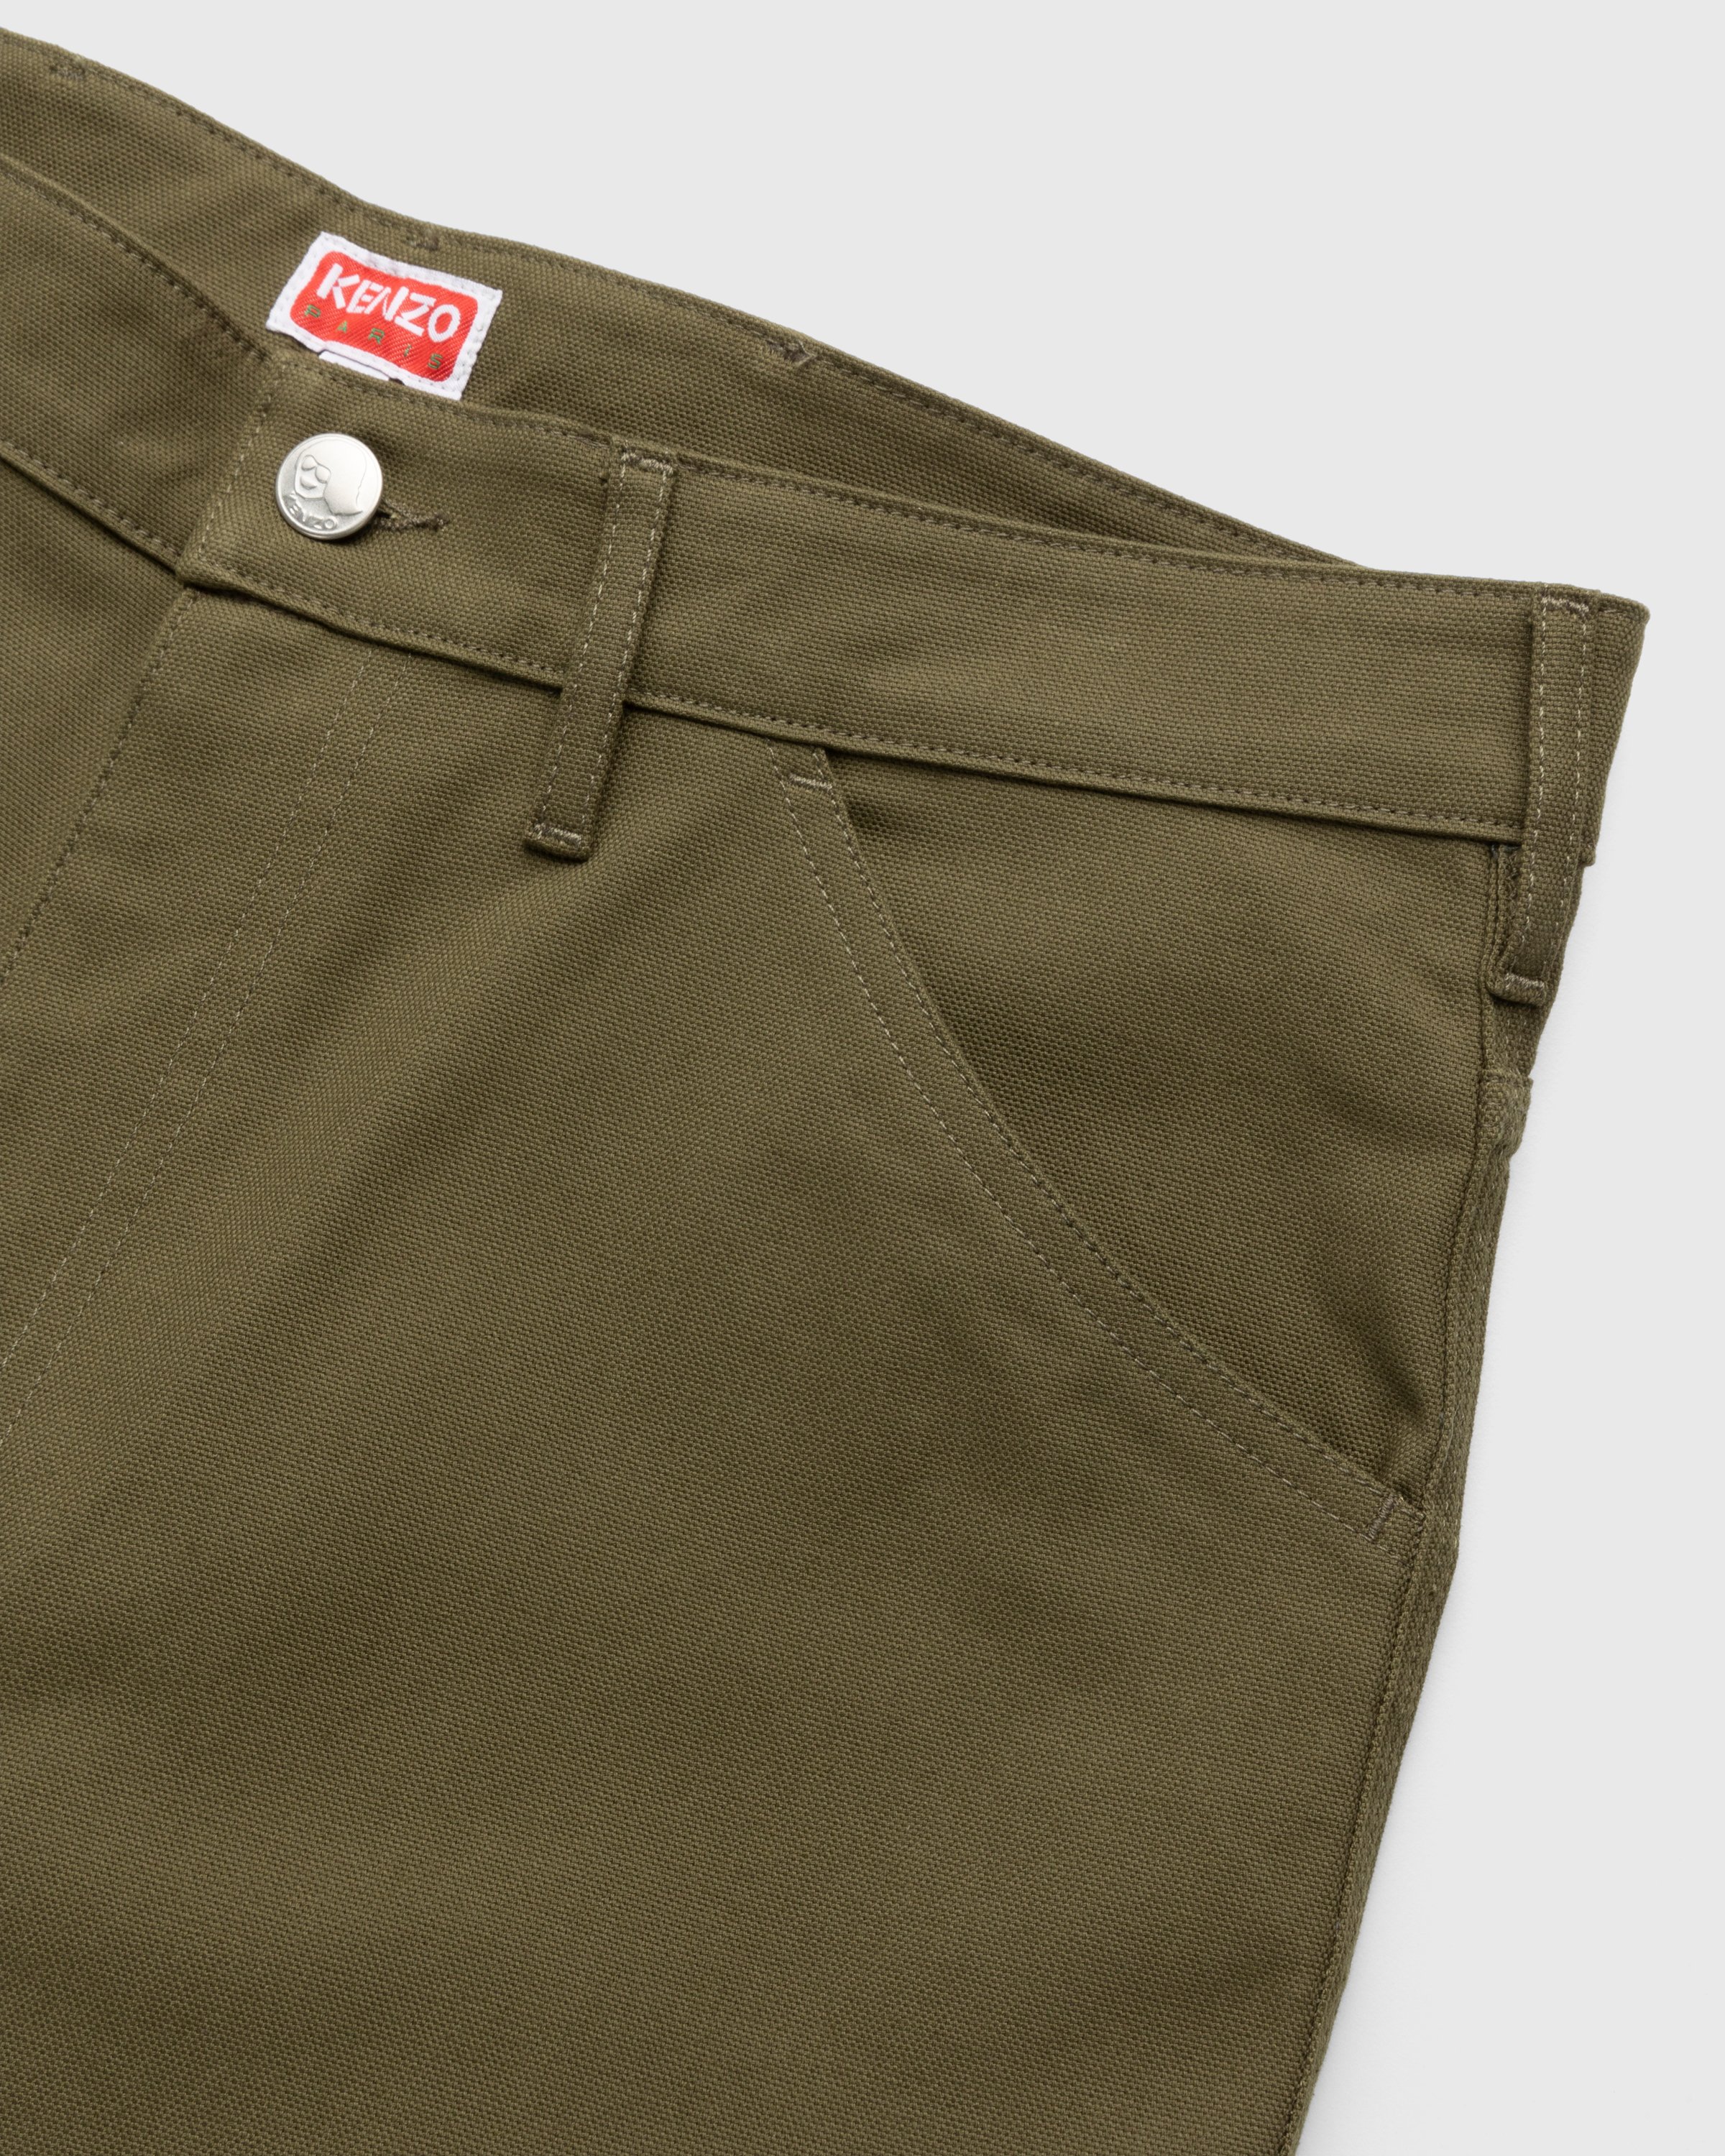 Kenzo - Carpenter Pants Dark Khaki - Clothing - Green - Image 3